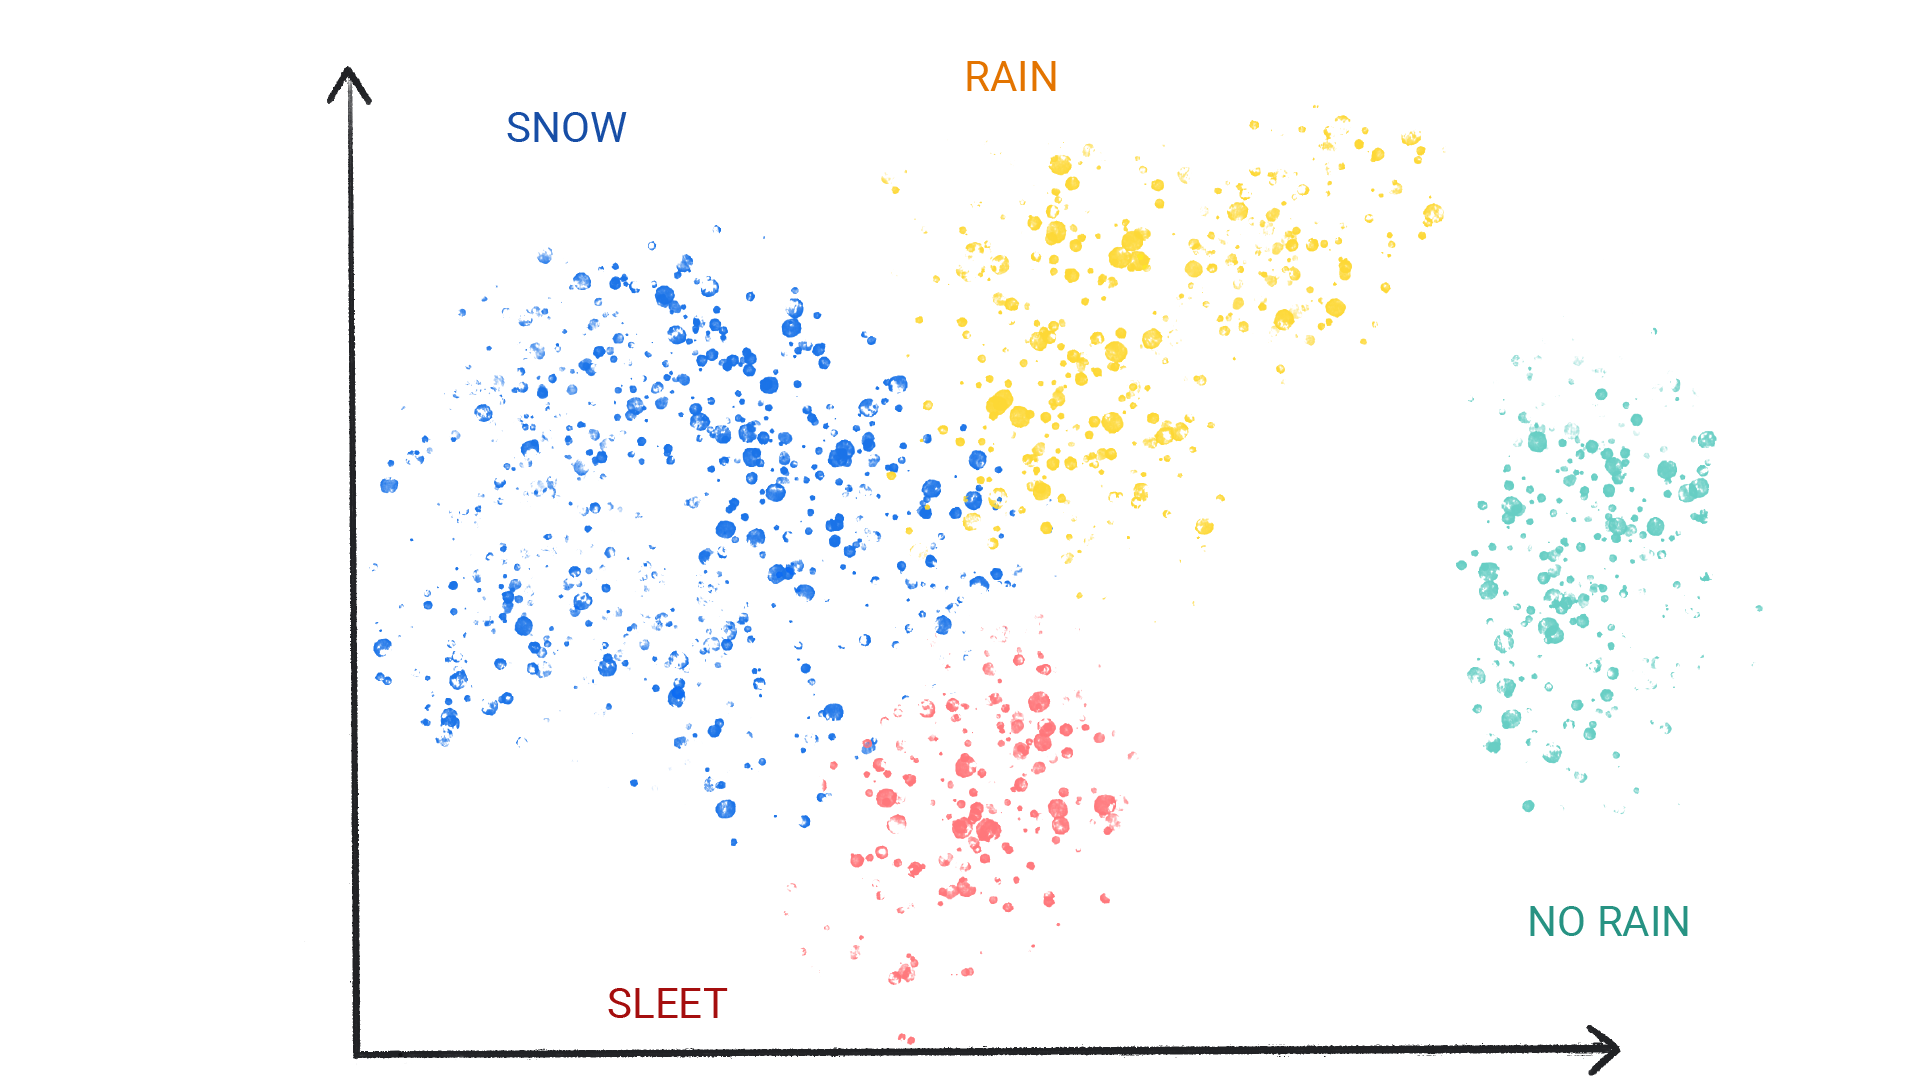 صورة تعرض نقاطًا ملوّنة في مجموعات عنقودية مصنّفة على أنّها ثلوج أو مطر أو بَرَد أو بلا مطر.